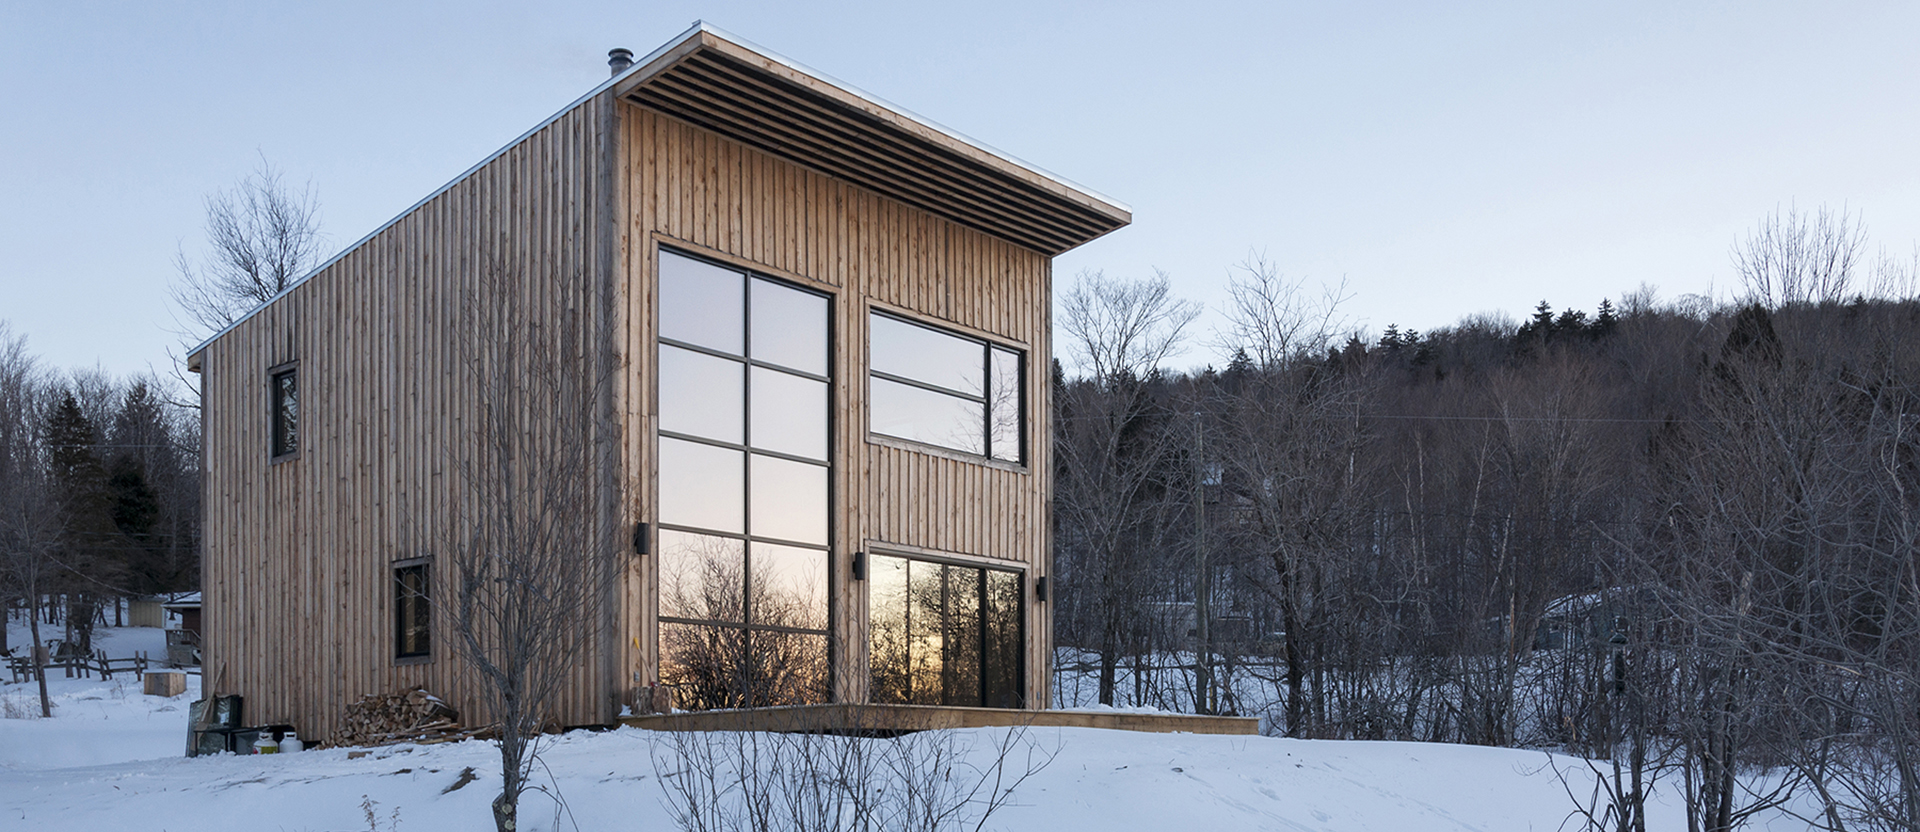 Casa in legno immersa nella natura